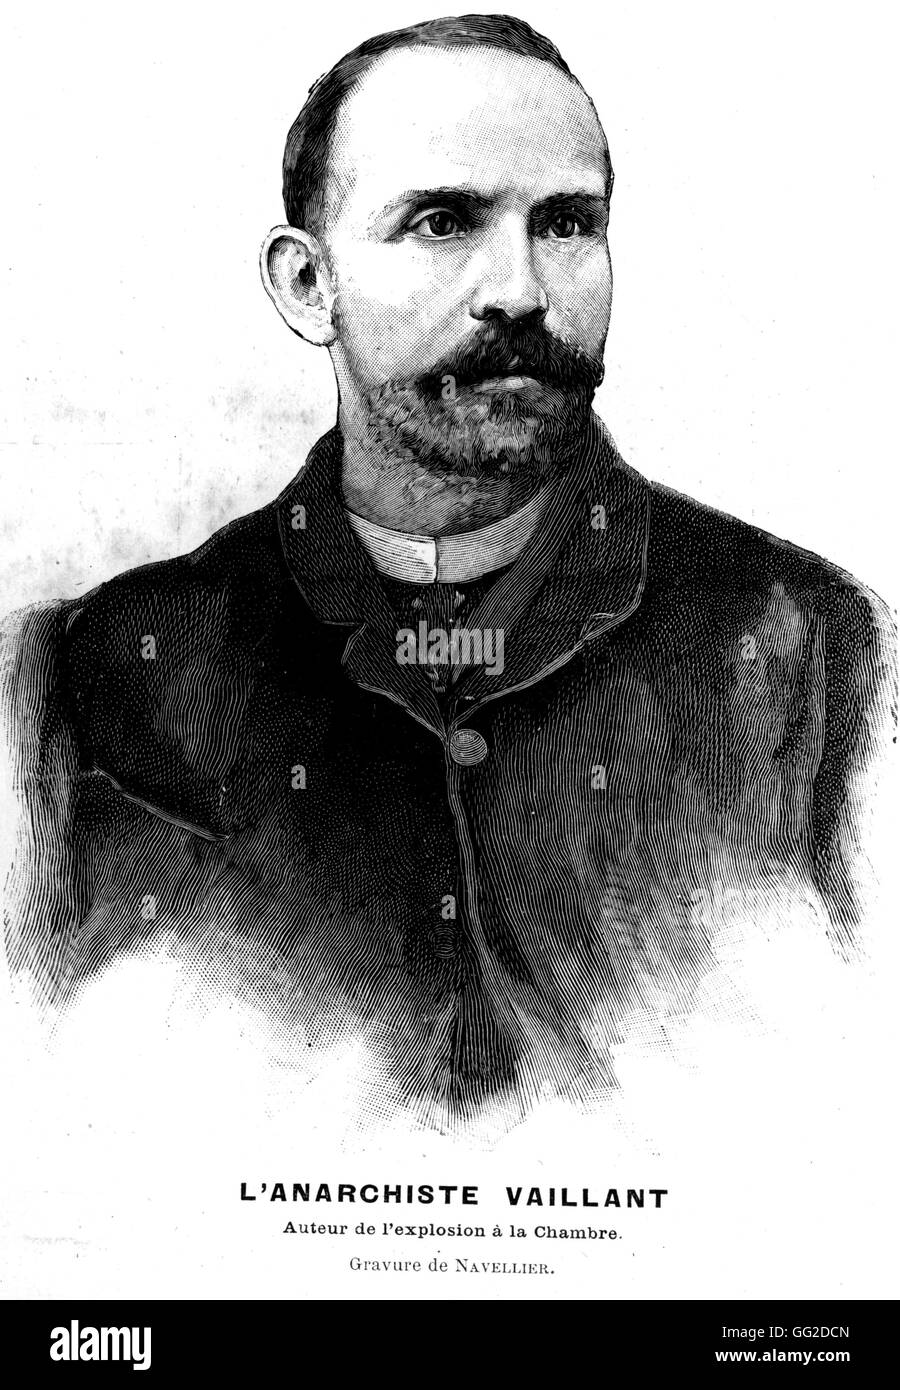 Auguste Vaillant (1861 – 1894) französischer Anarchist der Nationalversammlung am 9. Dezember 1893 bombardiert.  Er wurde am 5. Februar 1894, hingerichtet und vor seinem Tod sagte er: "Runter mit der wohlhabenden Gesellschaft und lebe Anarchie" 1893 Frankreich Stockfoto